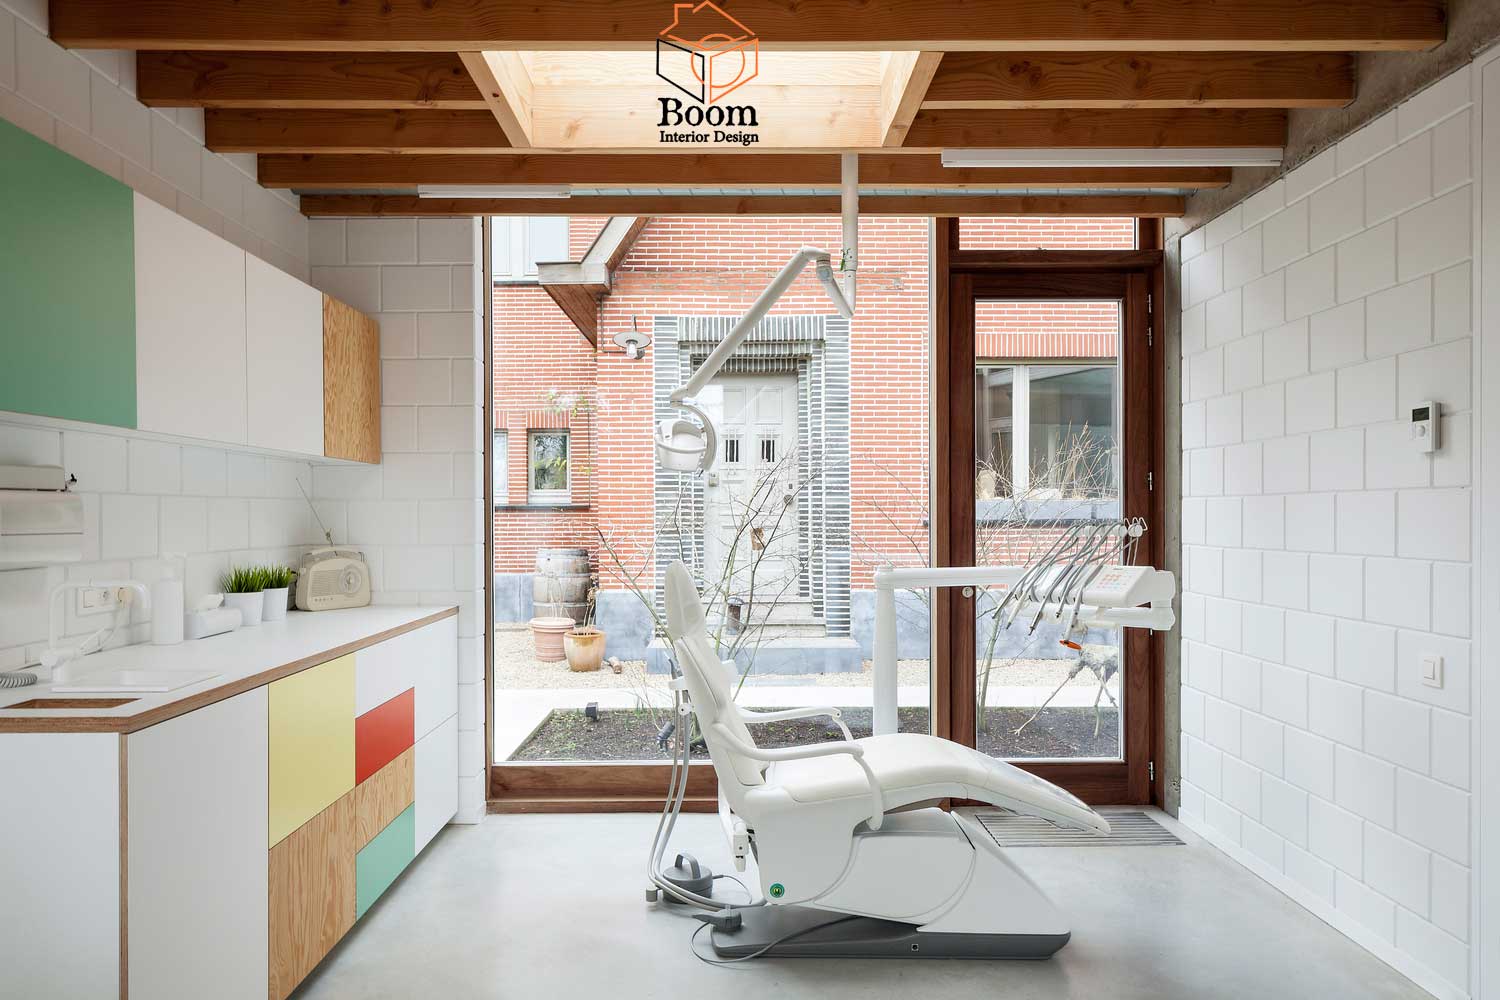 طراحی داخلی اکولوژیک مطب دندانپزشکی در بلژیک